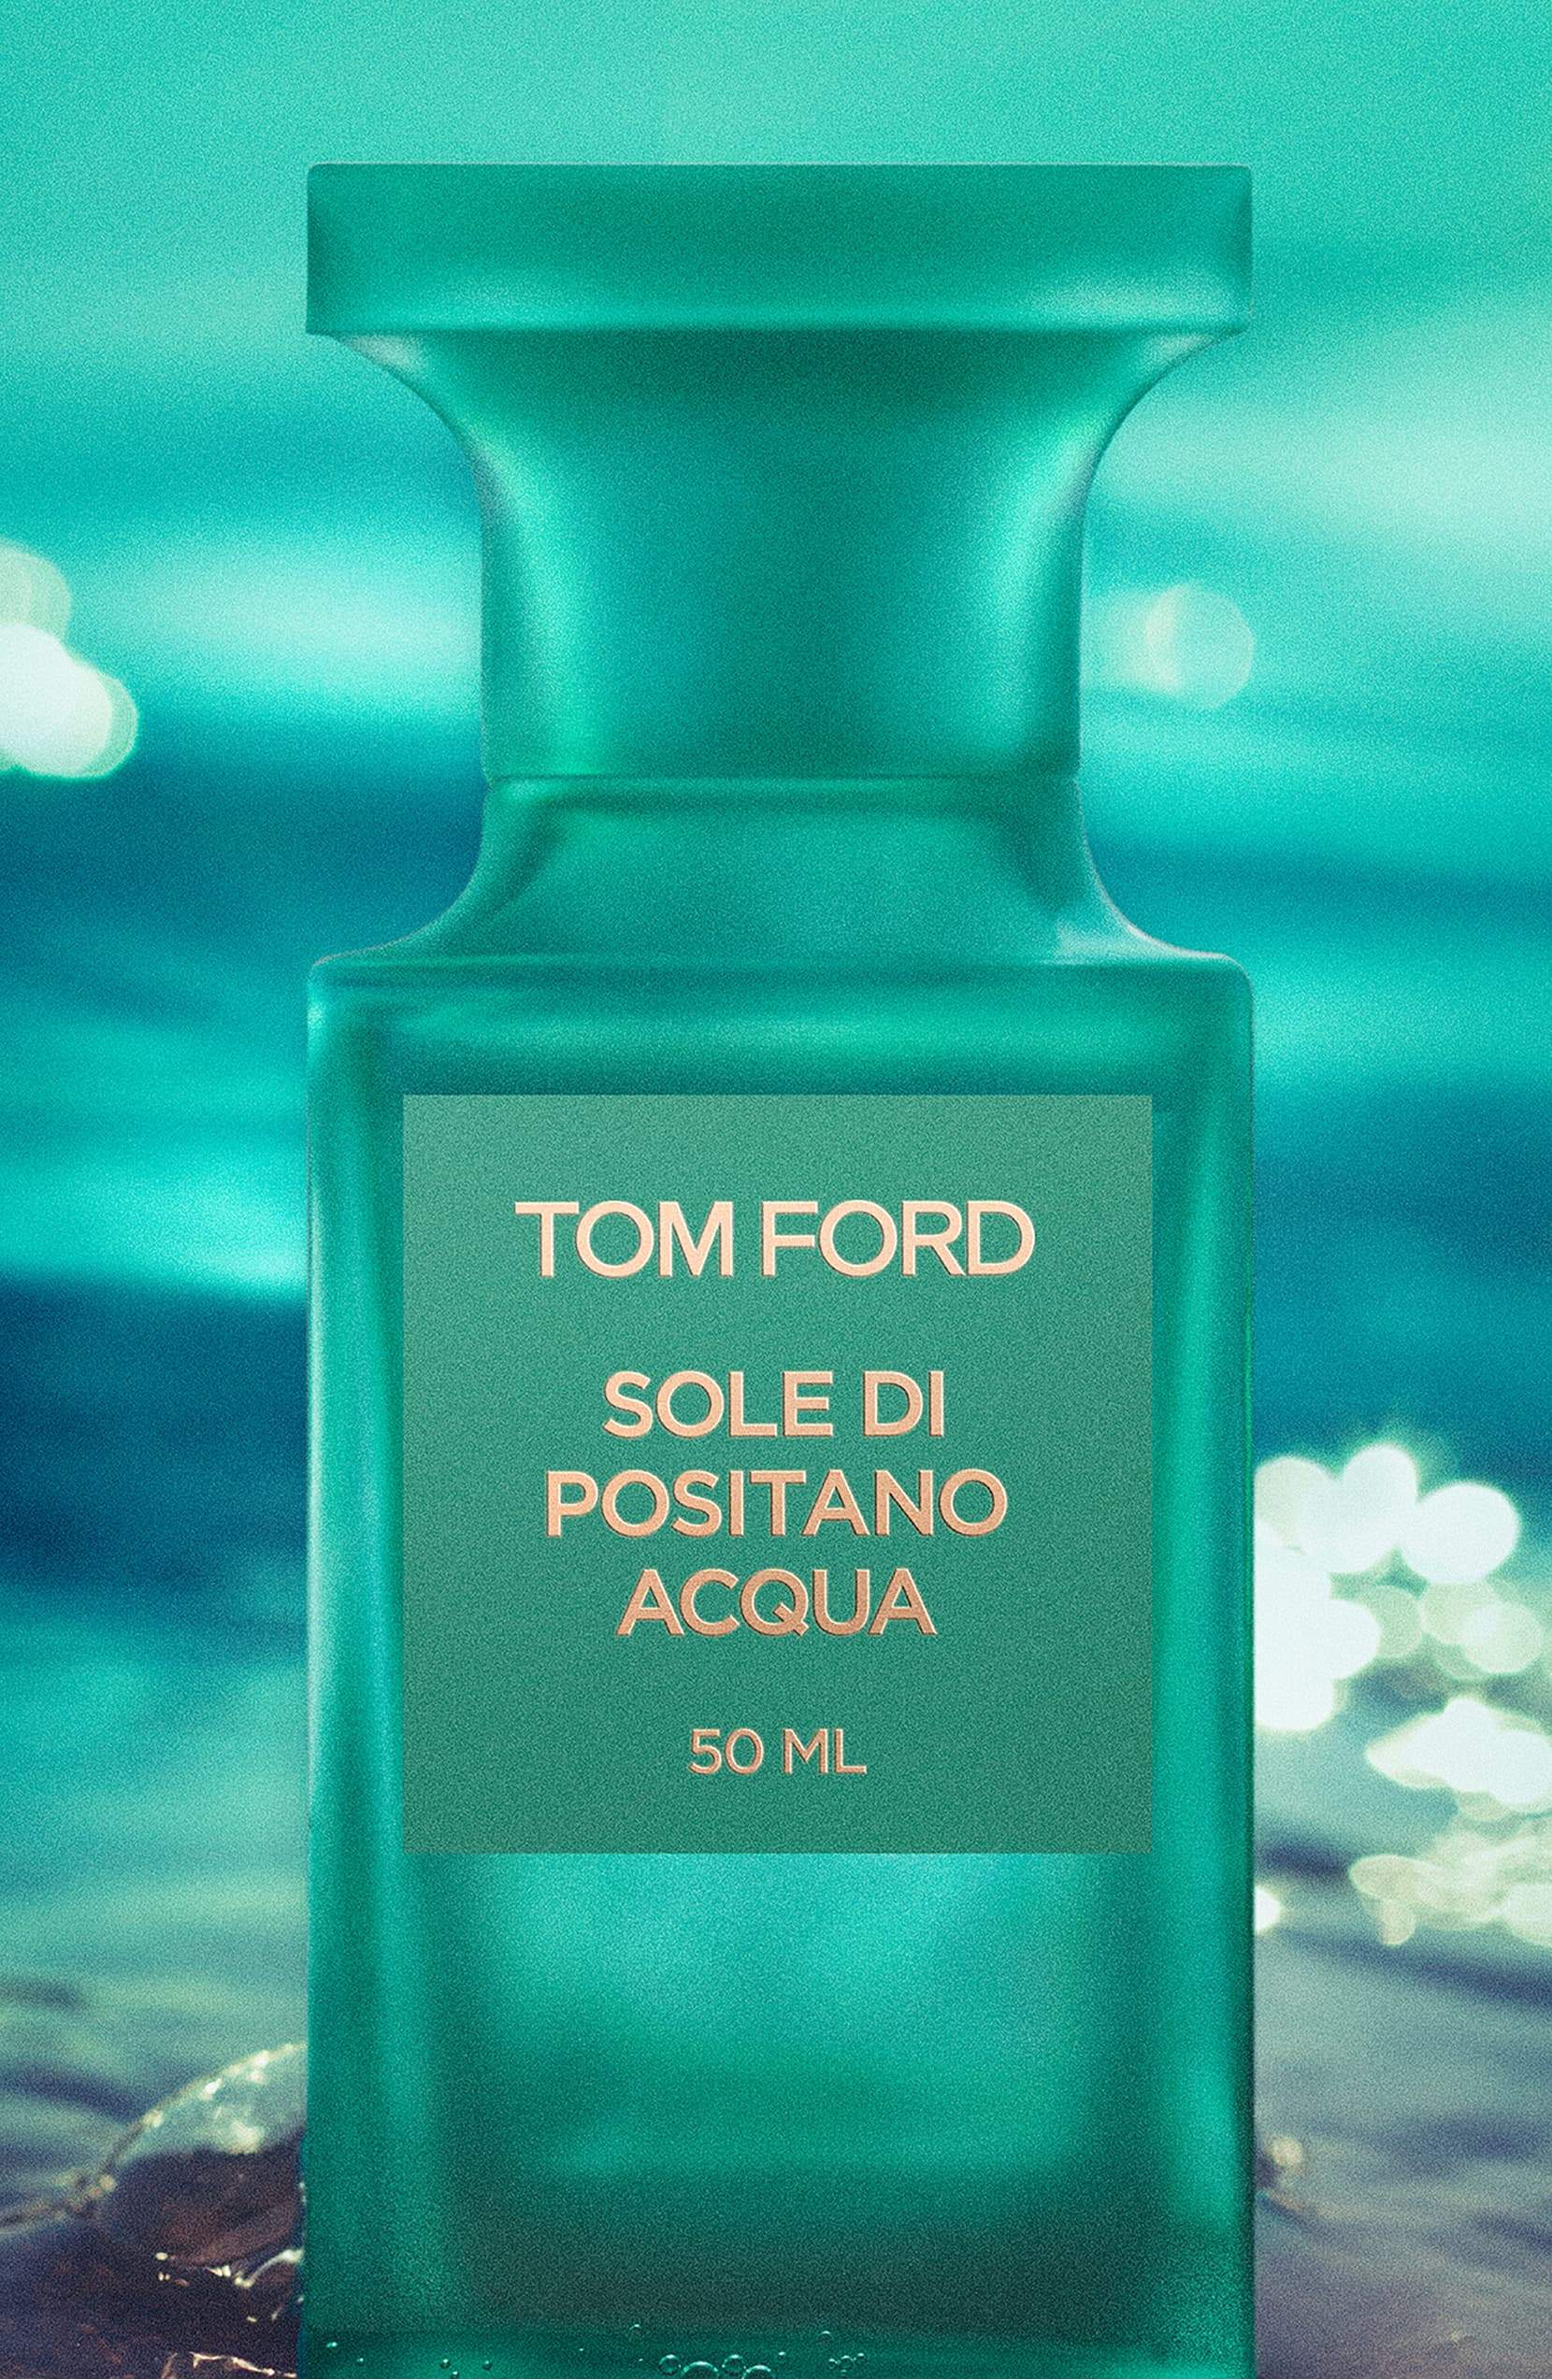 TOM FORD Sole di Positano Acqua Eau de Toilette Spray oz –